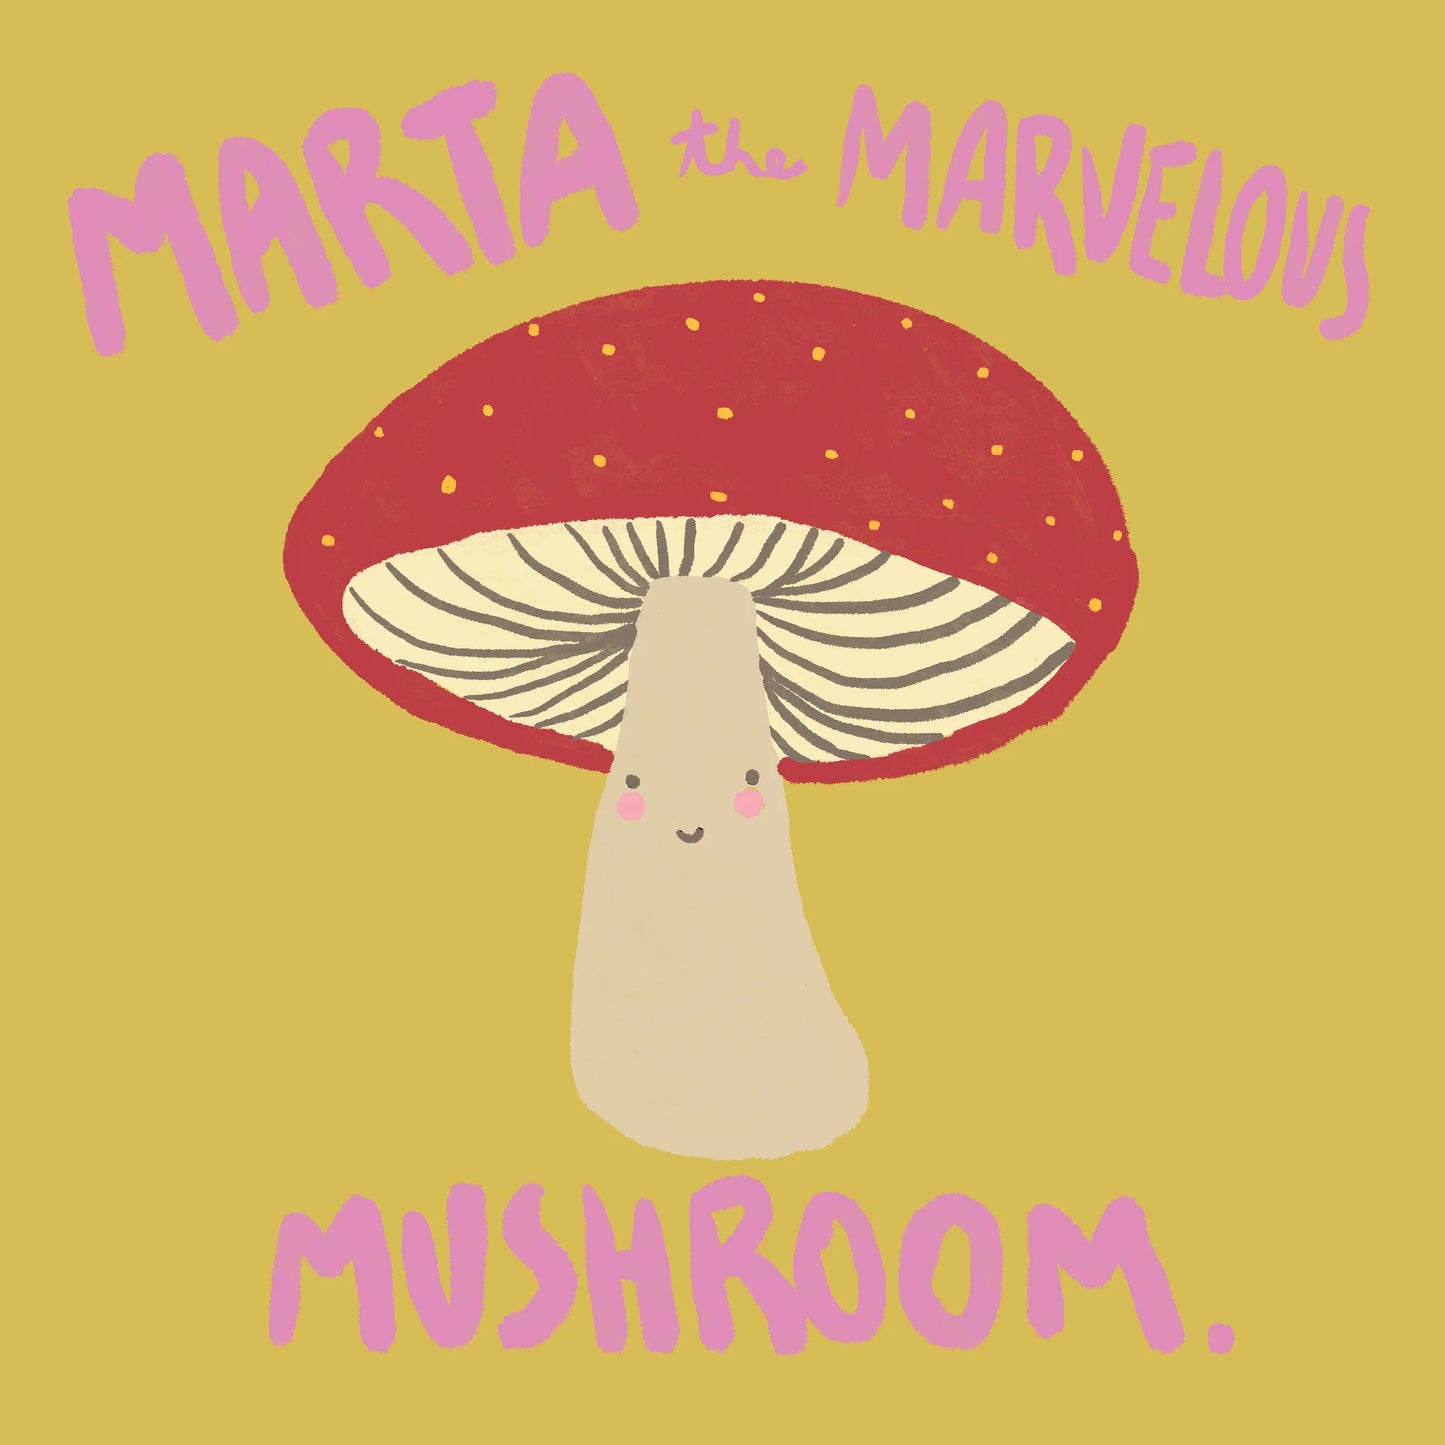 Marta the Marvelous Mushroom Sew Kit 🍄🧵